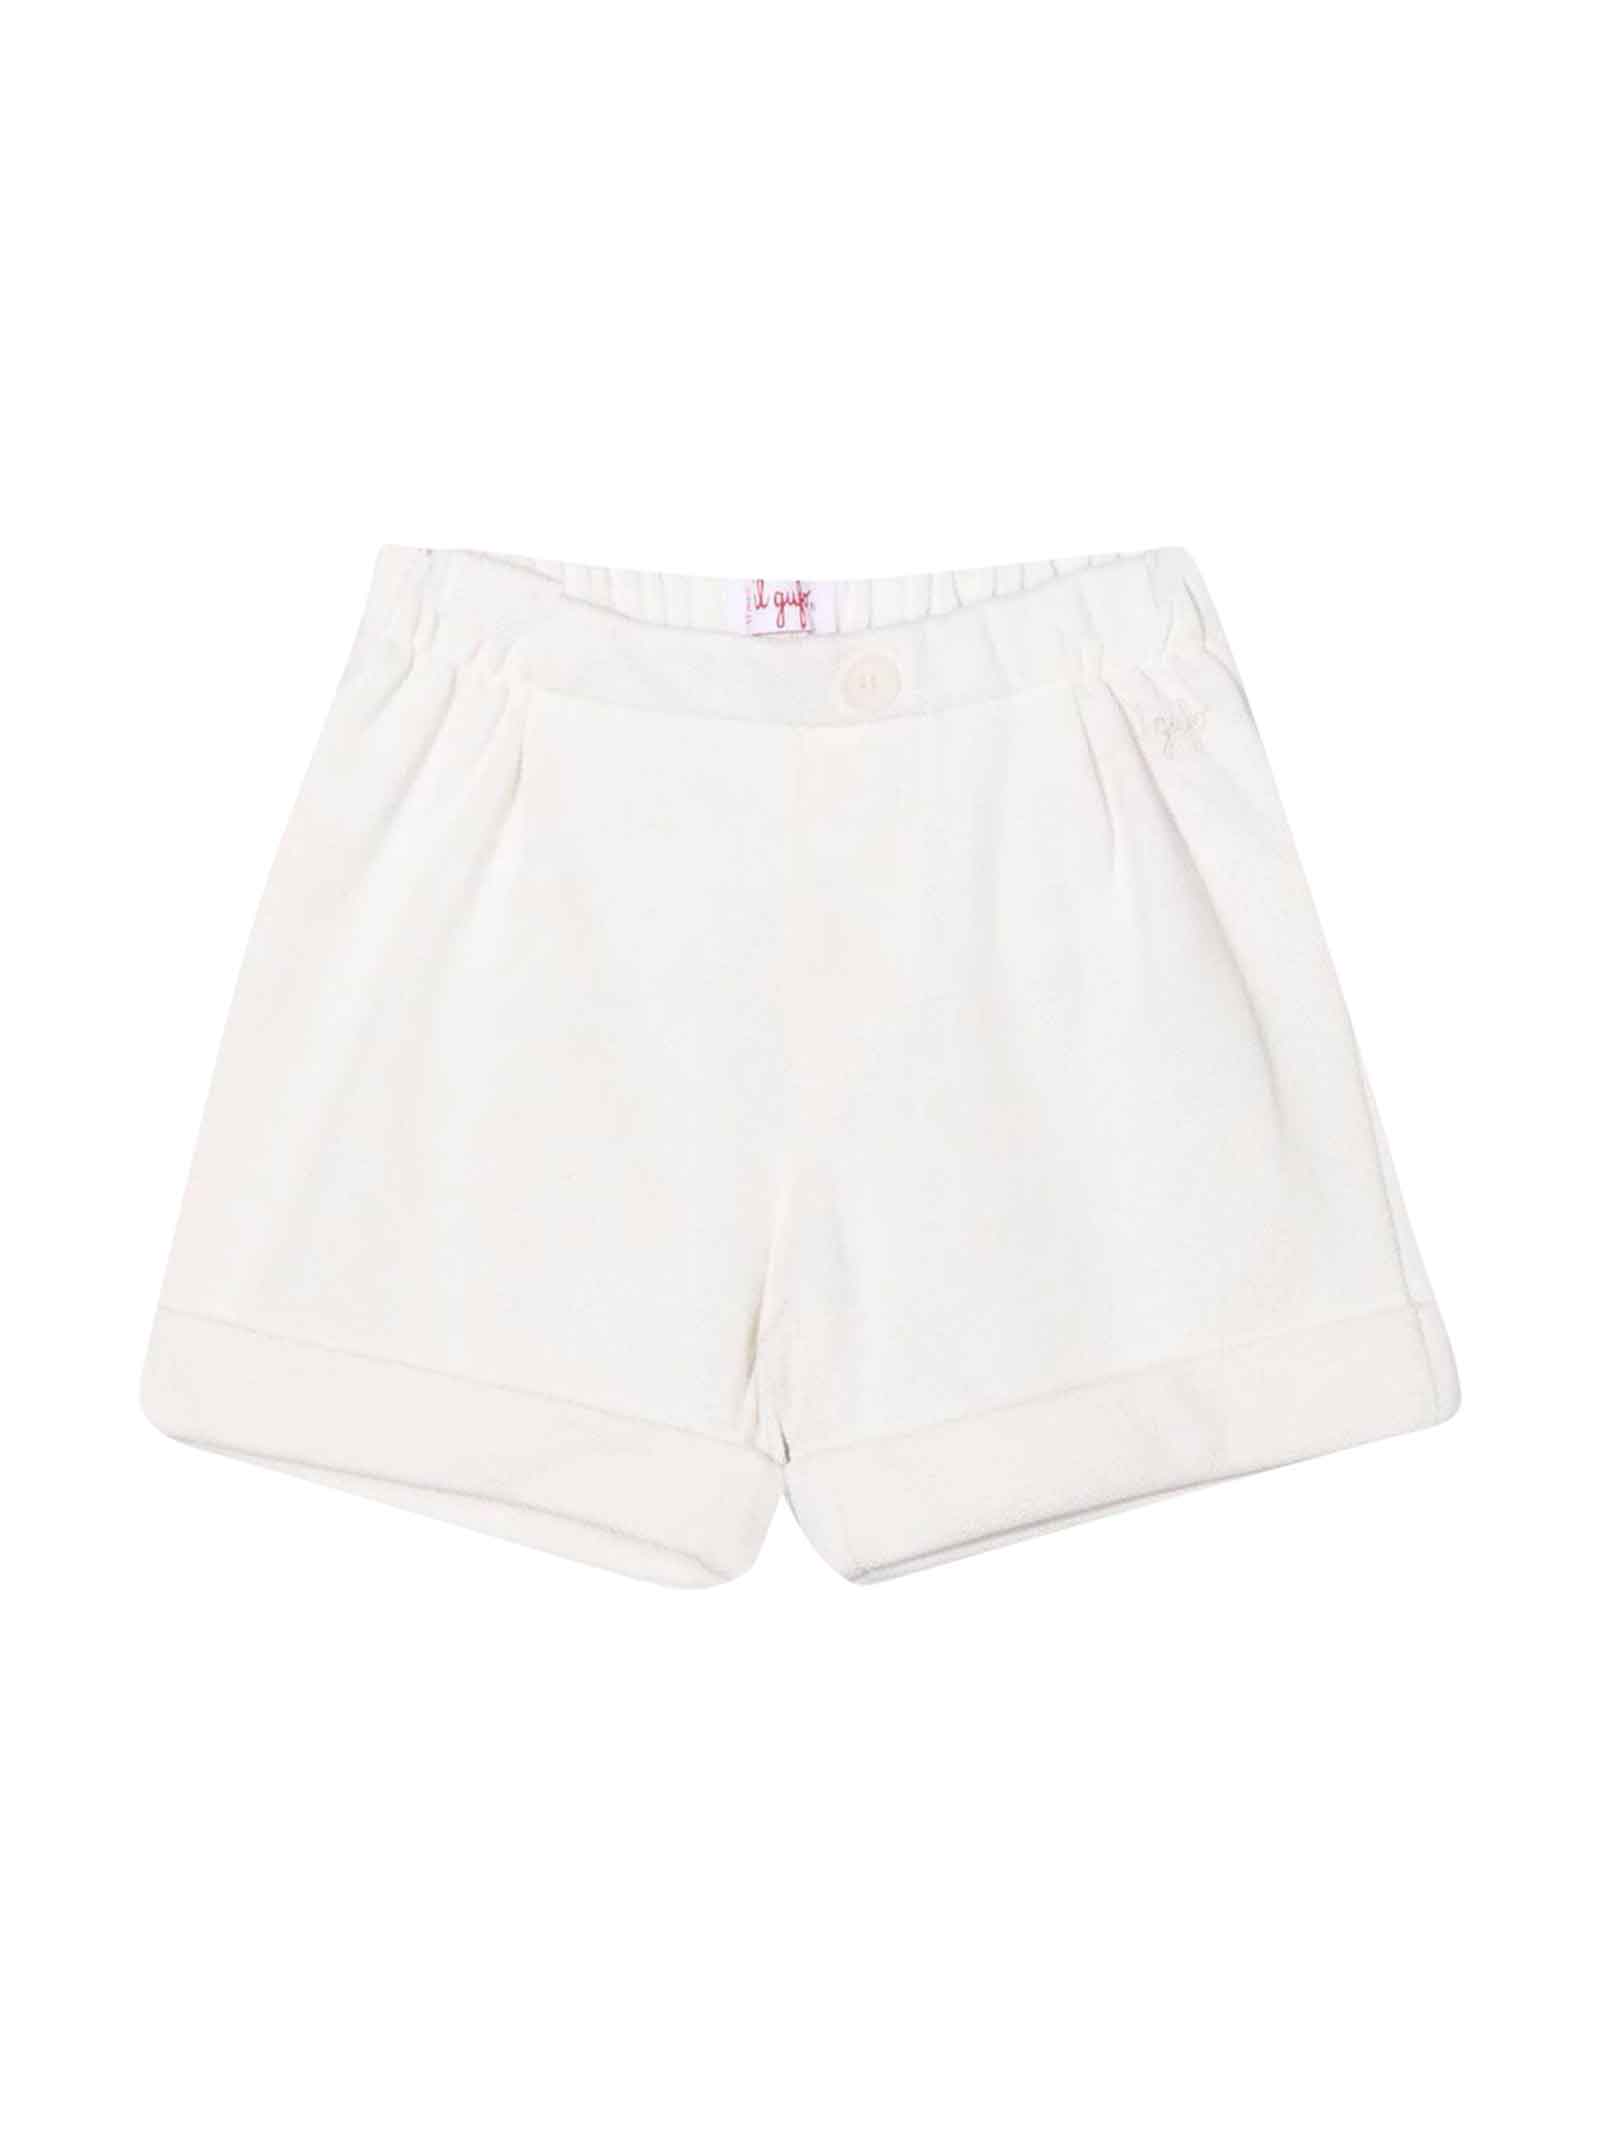 Il Gufo Newborn White Shorts